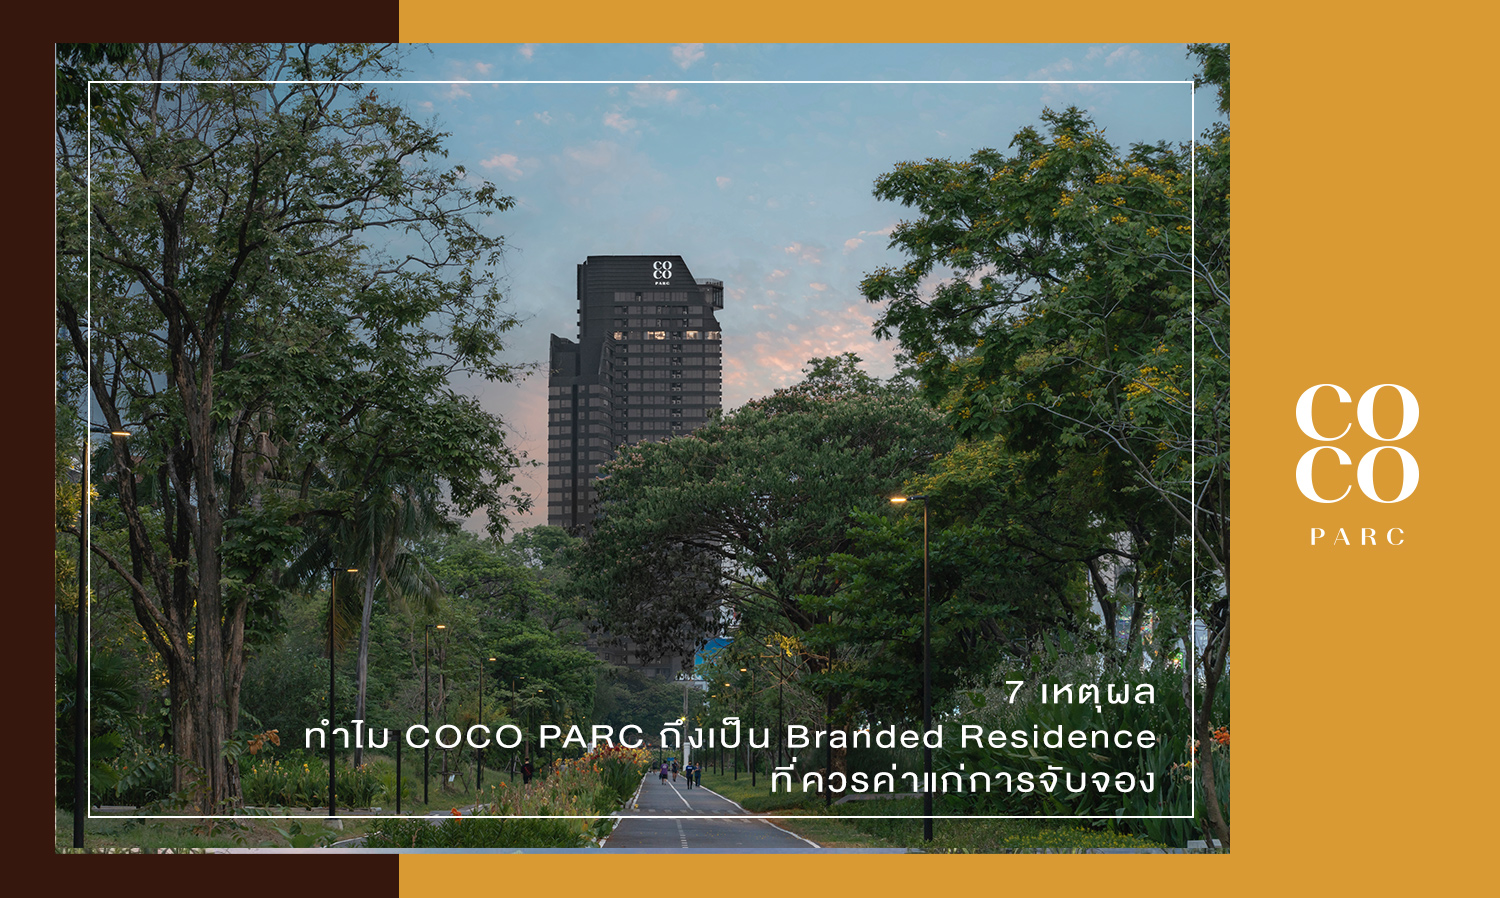 7 เหตุผล ทำไม COCO PARC ถึงเป็น Branded Residence ที่ควรค่าแก่การจับจอง